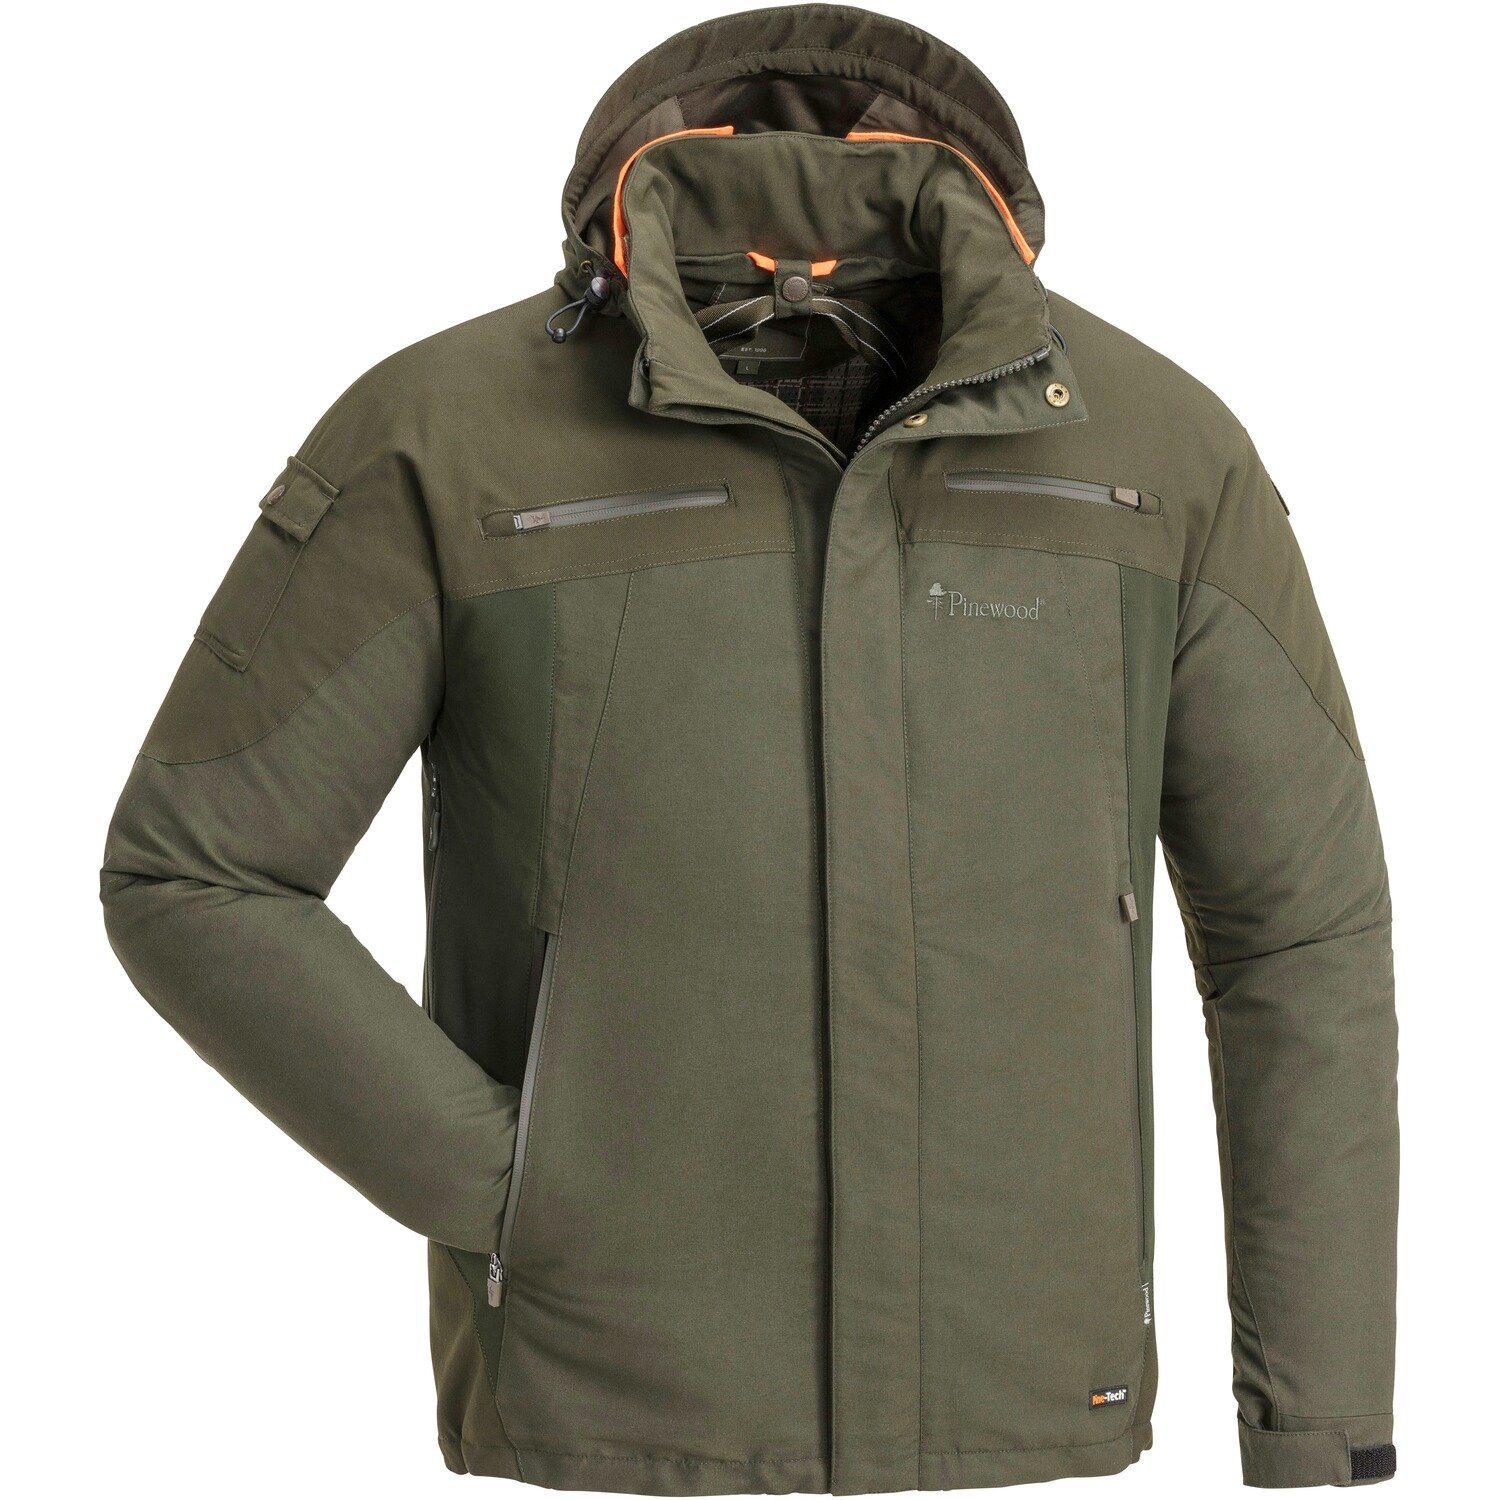 Günstig erhältlich Pinewood Funktionsjacke Jacke Hunter 2.0 Xtreme Pro